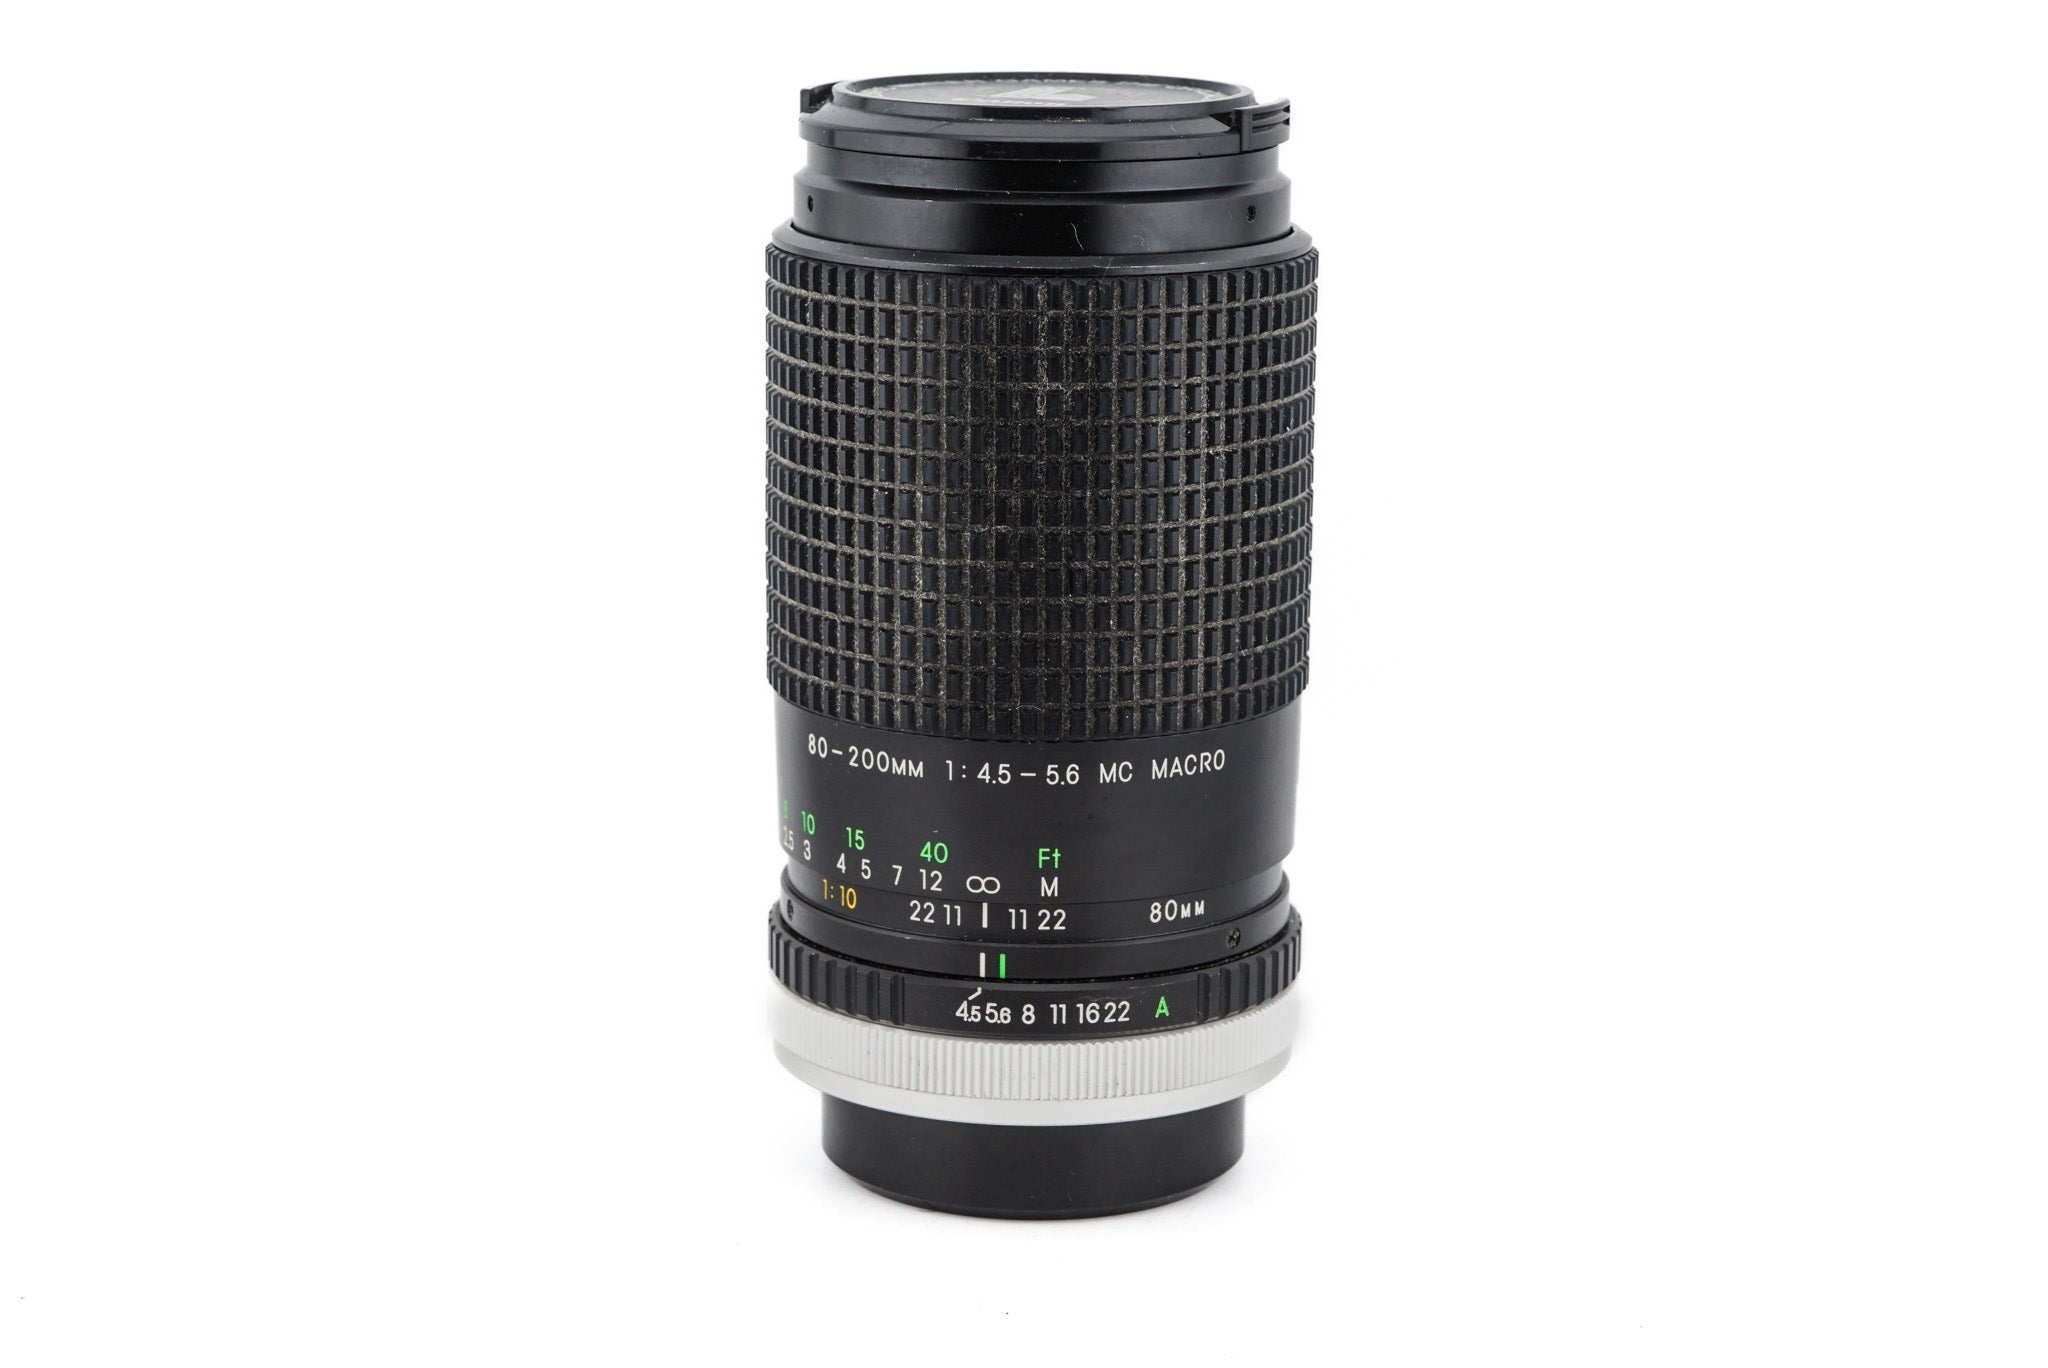 Cosina 80-200mm f4.5-5.6 Super MC Macro - Lens